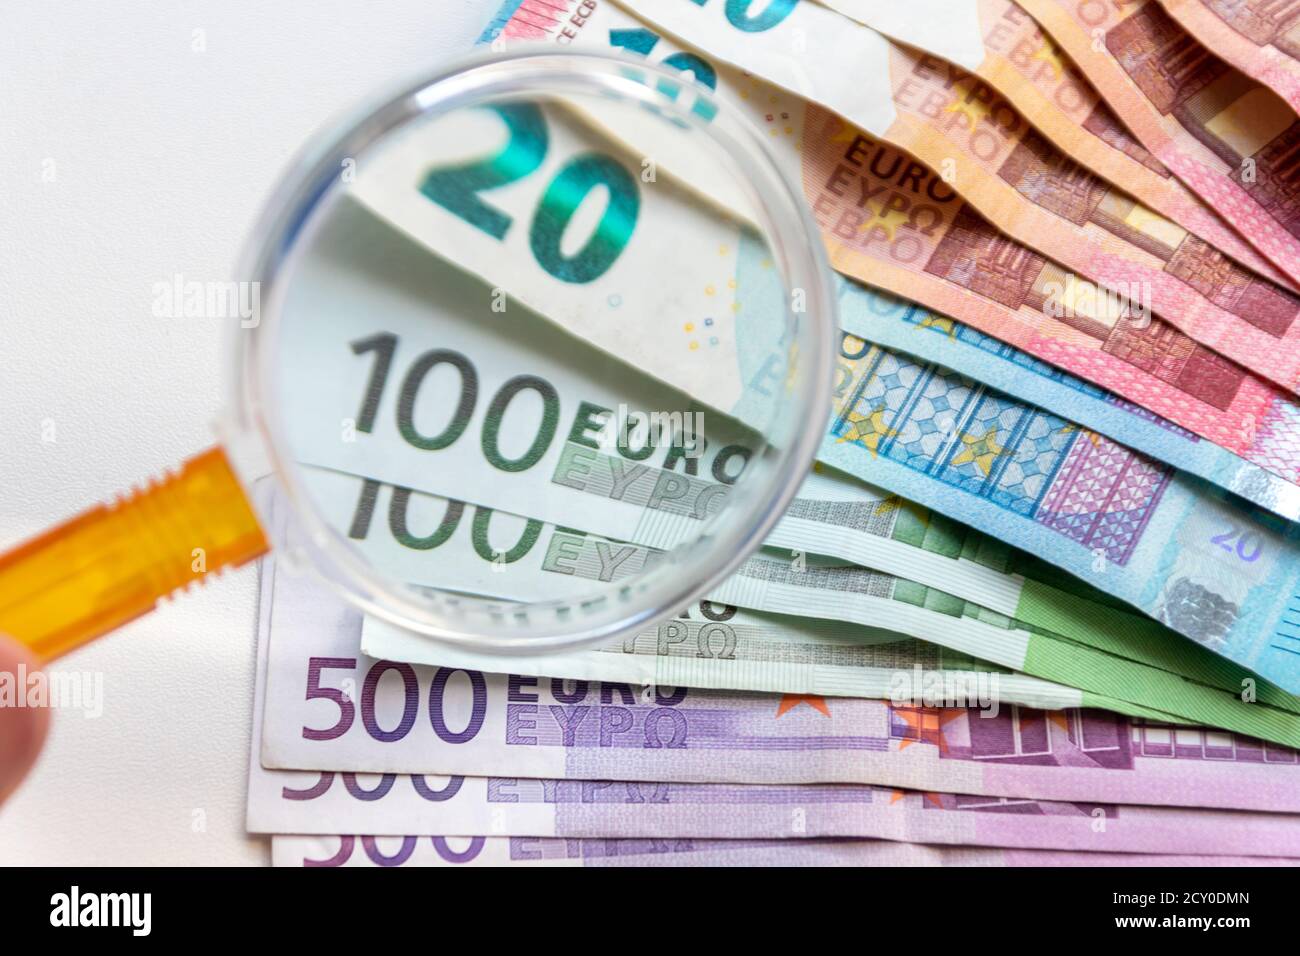 Un montón de billetes de banco europeos para la multitud internacional financiación o transacción financiera para mostrar el comercio internacional y financiero mercado Foto de stock